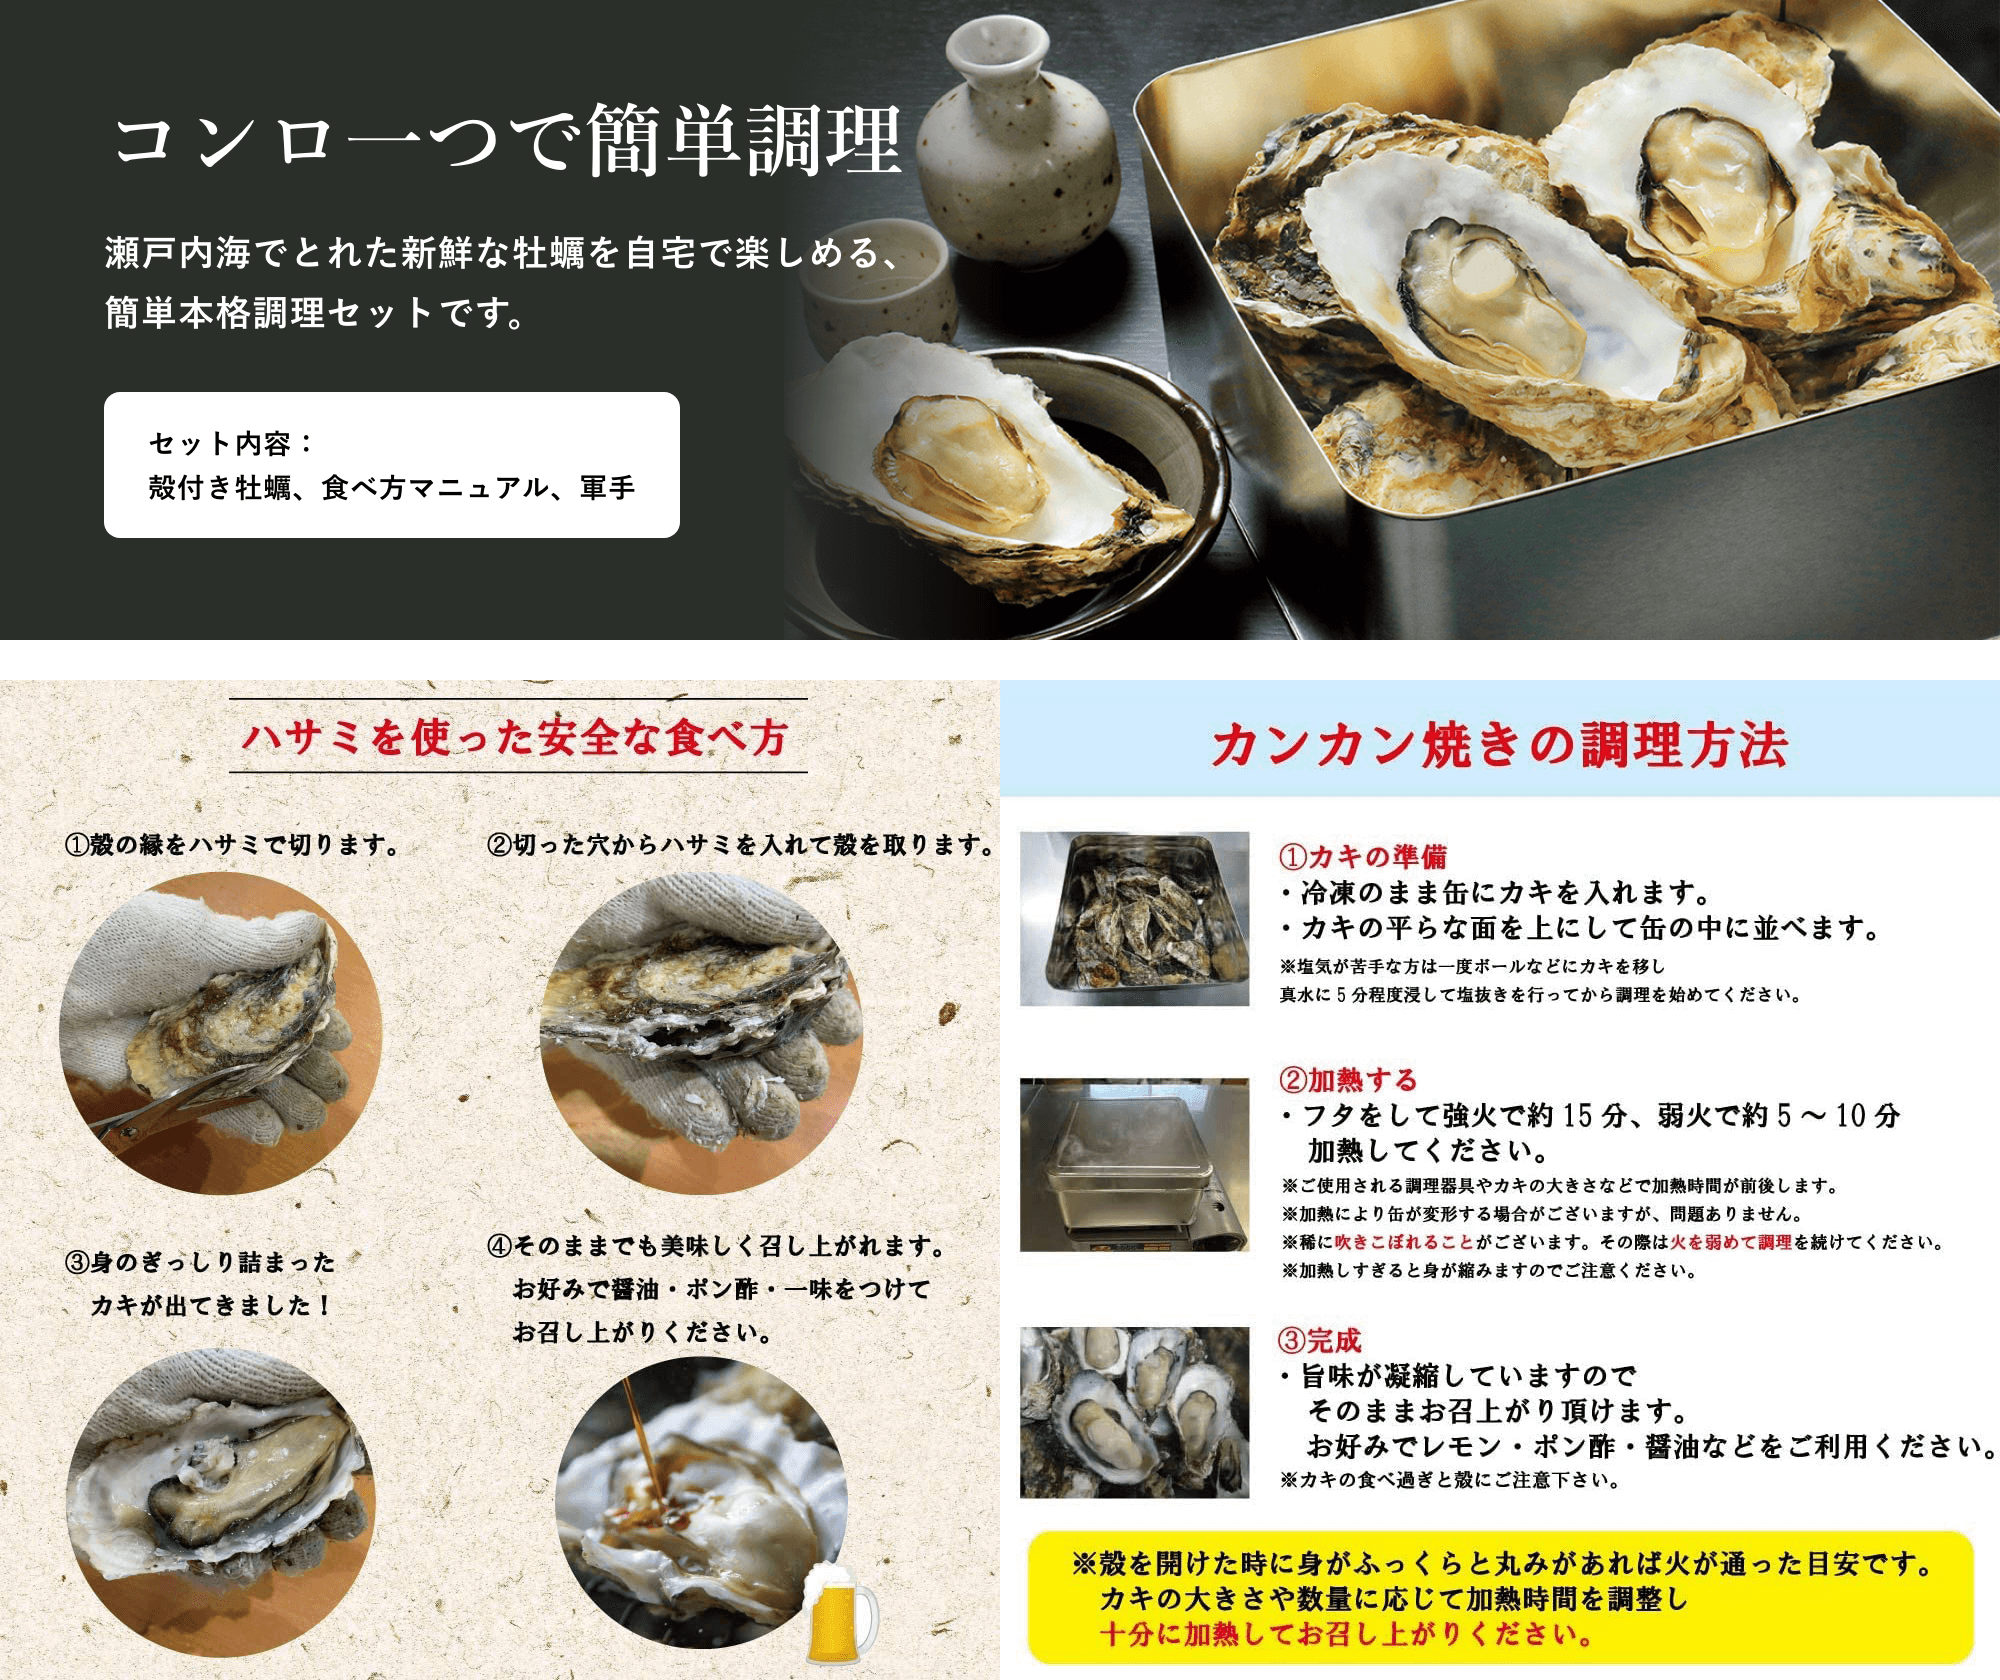 瀬戸内海でとれた新鮮な牡蠣を自宅で楽しめる、簡単本格調理セットです。